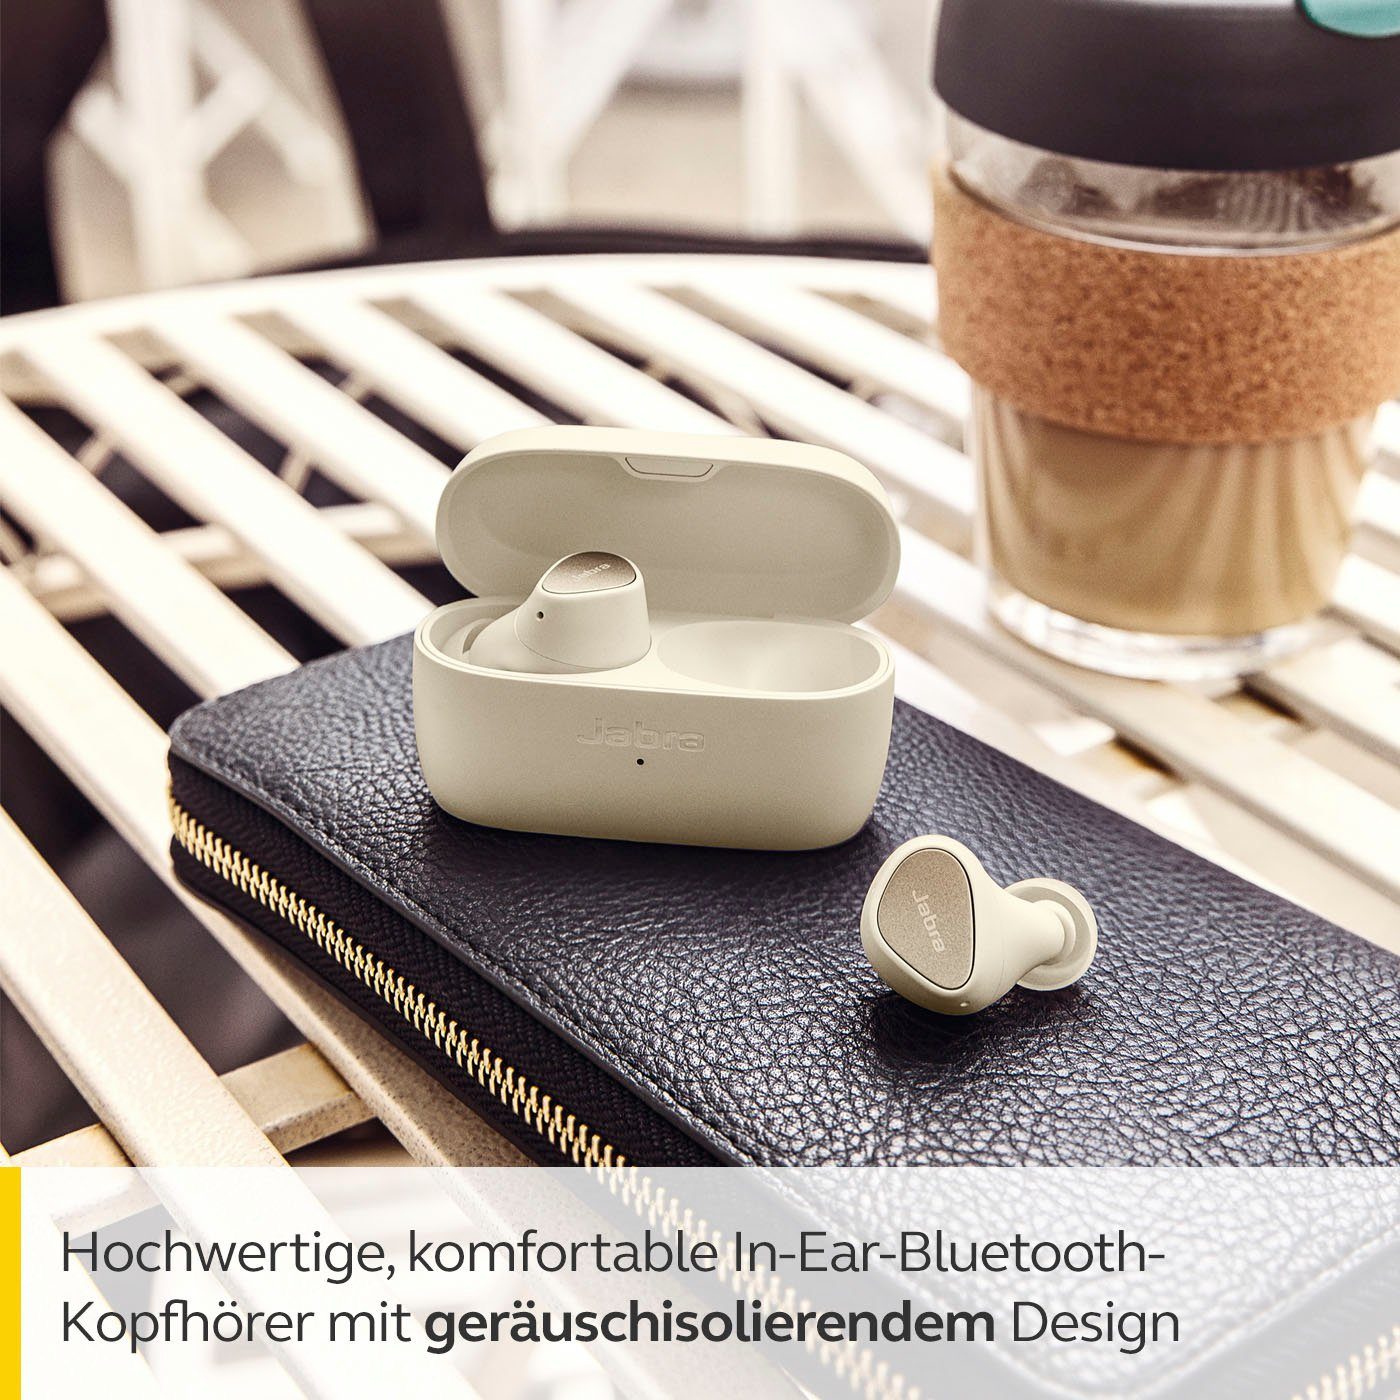 Alexa, In-Ear-Kopfhörer gold-beige Assistant, Elite Siri, Jabra Bluetooth) 3 Google (Geräuschisolierung,